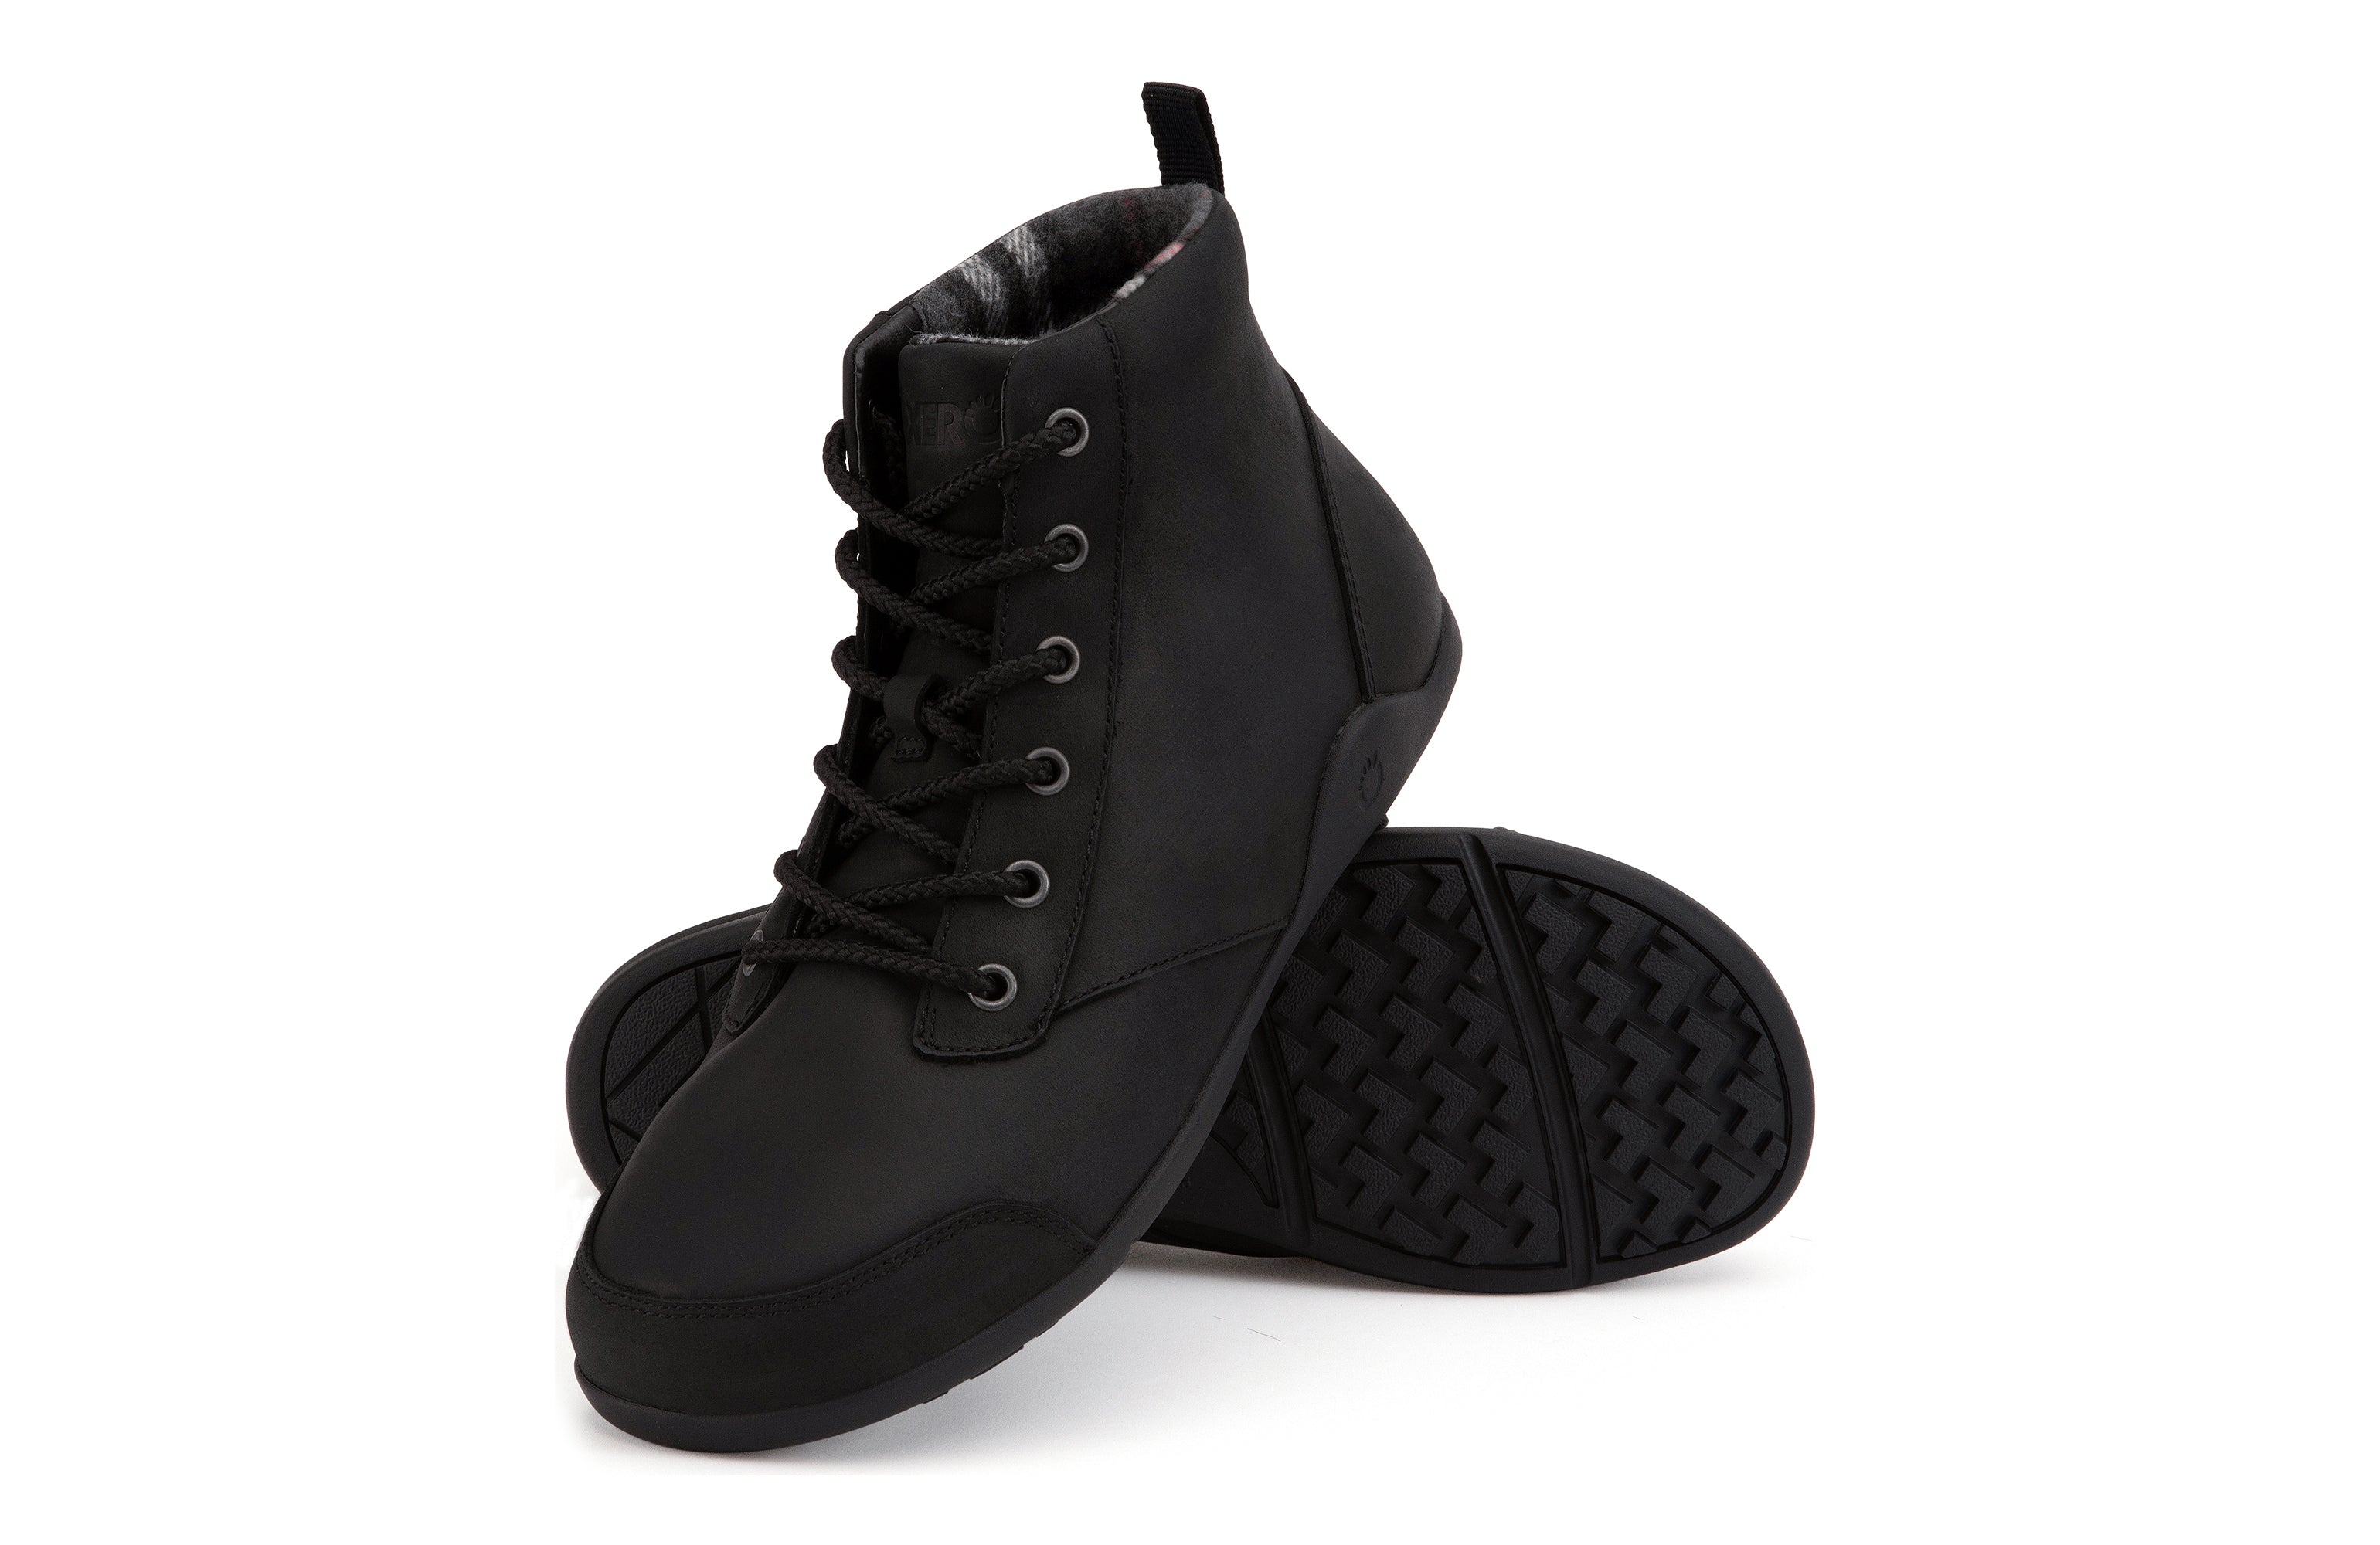 Xero Shoes Denver Leather barfods vinterstøvler til mænd i farven black, par